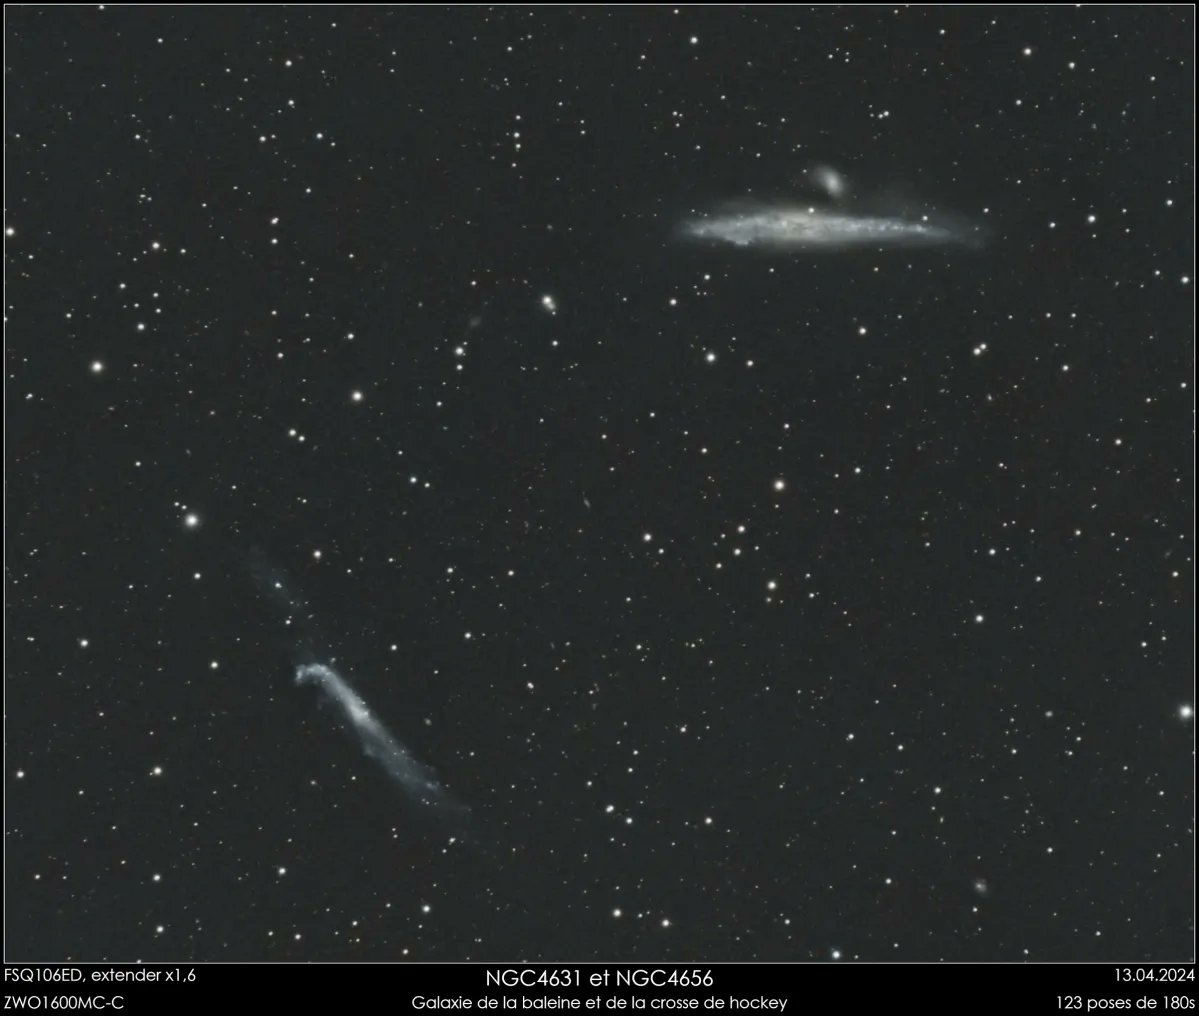 📷🔭Galaxie de la Baleine ou Caldwell 32 (NGC 4631)

Est une galaxie spirale barrée vue par la tranche dans la constellation des Chiens de chasse.

Crédit : @Gerard31_astro

#Galaxie #astrophoto #Astronomie